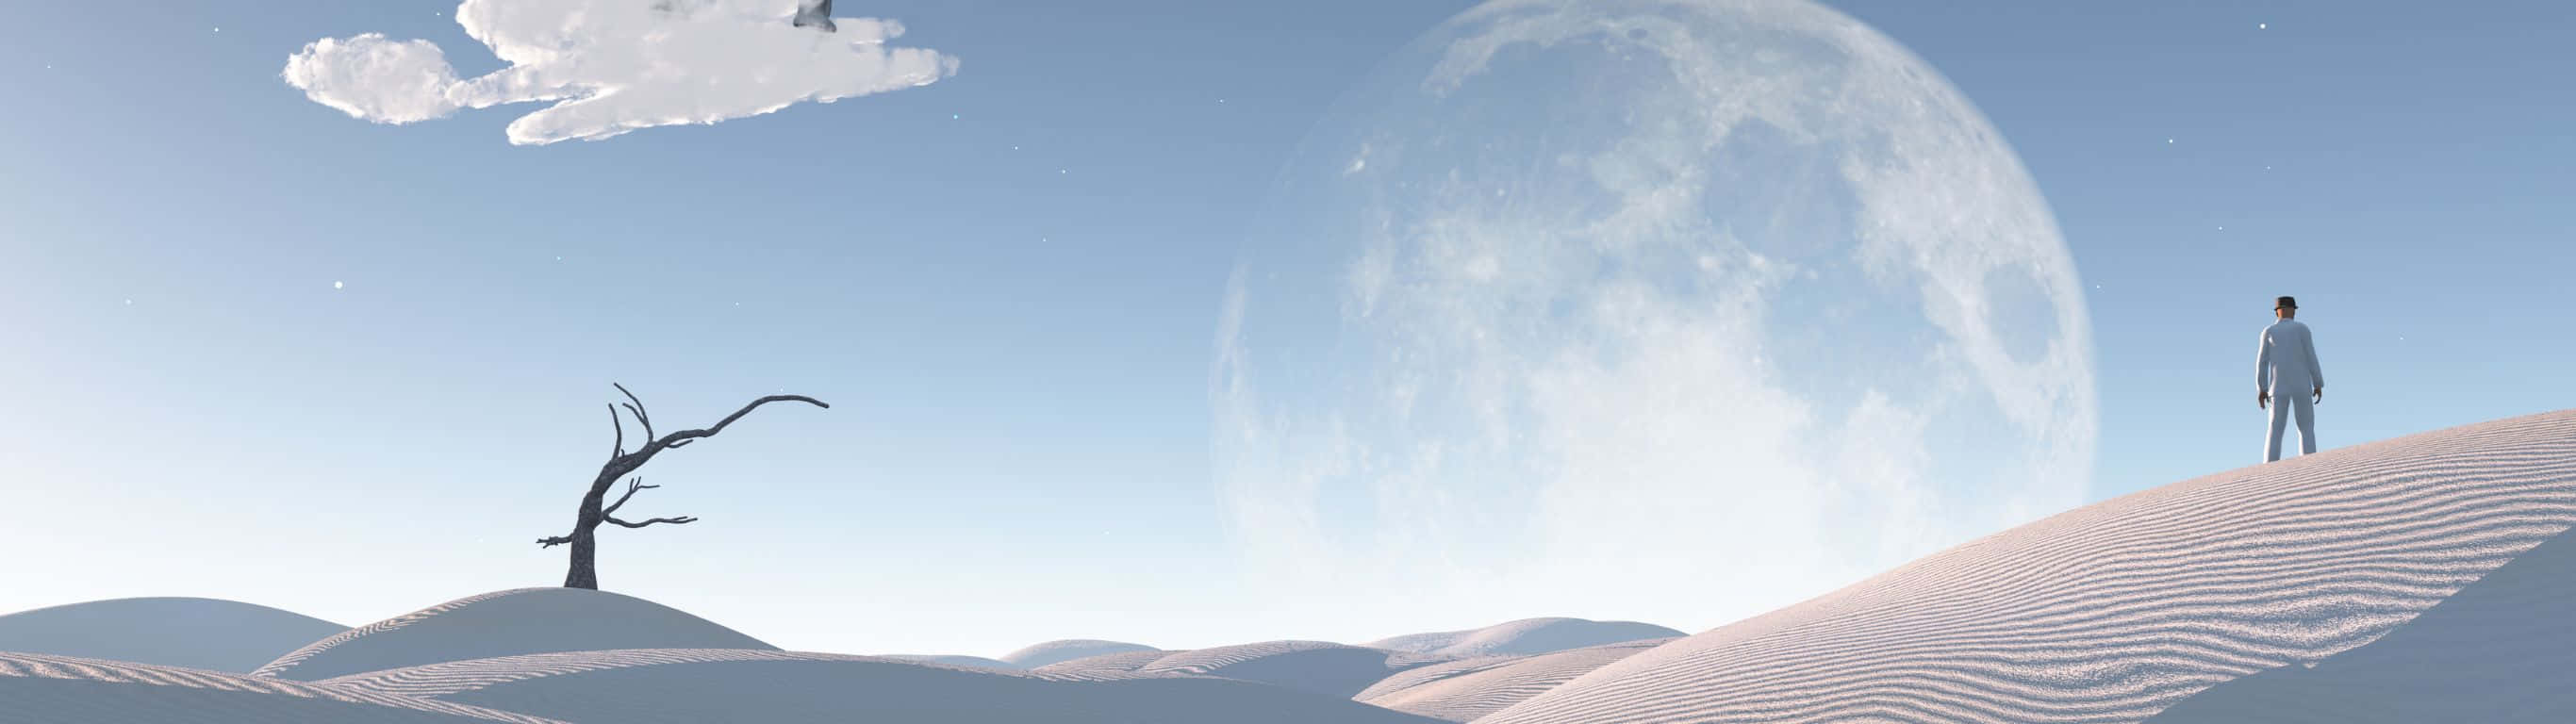 Unhombre Parado En Una Colina Con Una Luna En El Cielo Fondo de pantalla